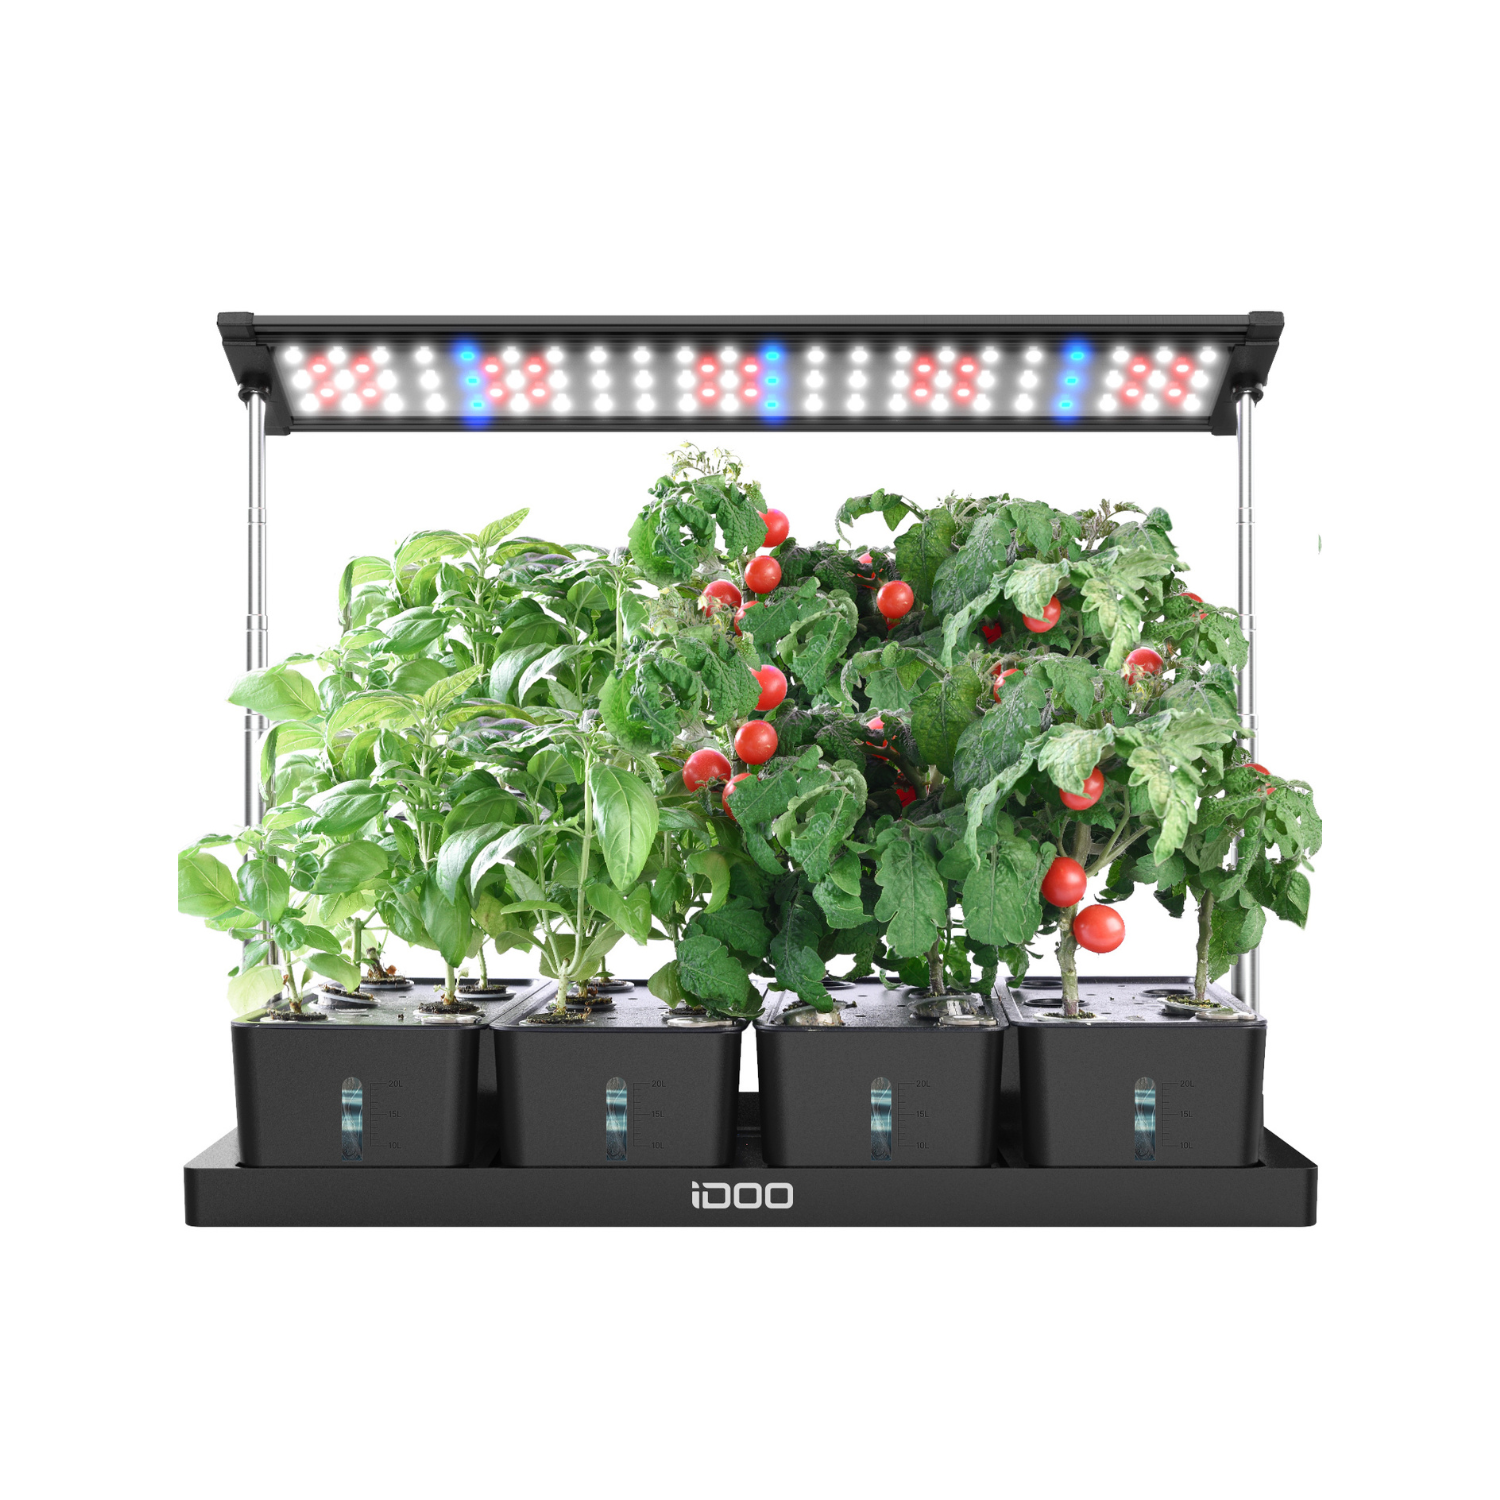 iDOO 20Pods Indoor Herb Garden Kit Black - Hydroponic Growing System Hydroponic Growing Systems by idoogroup